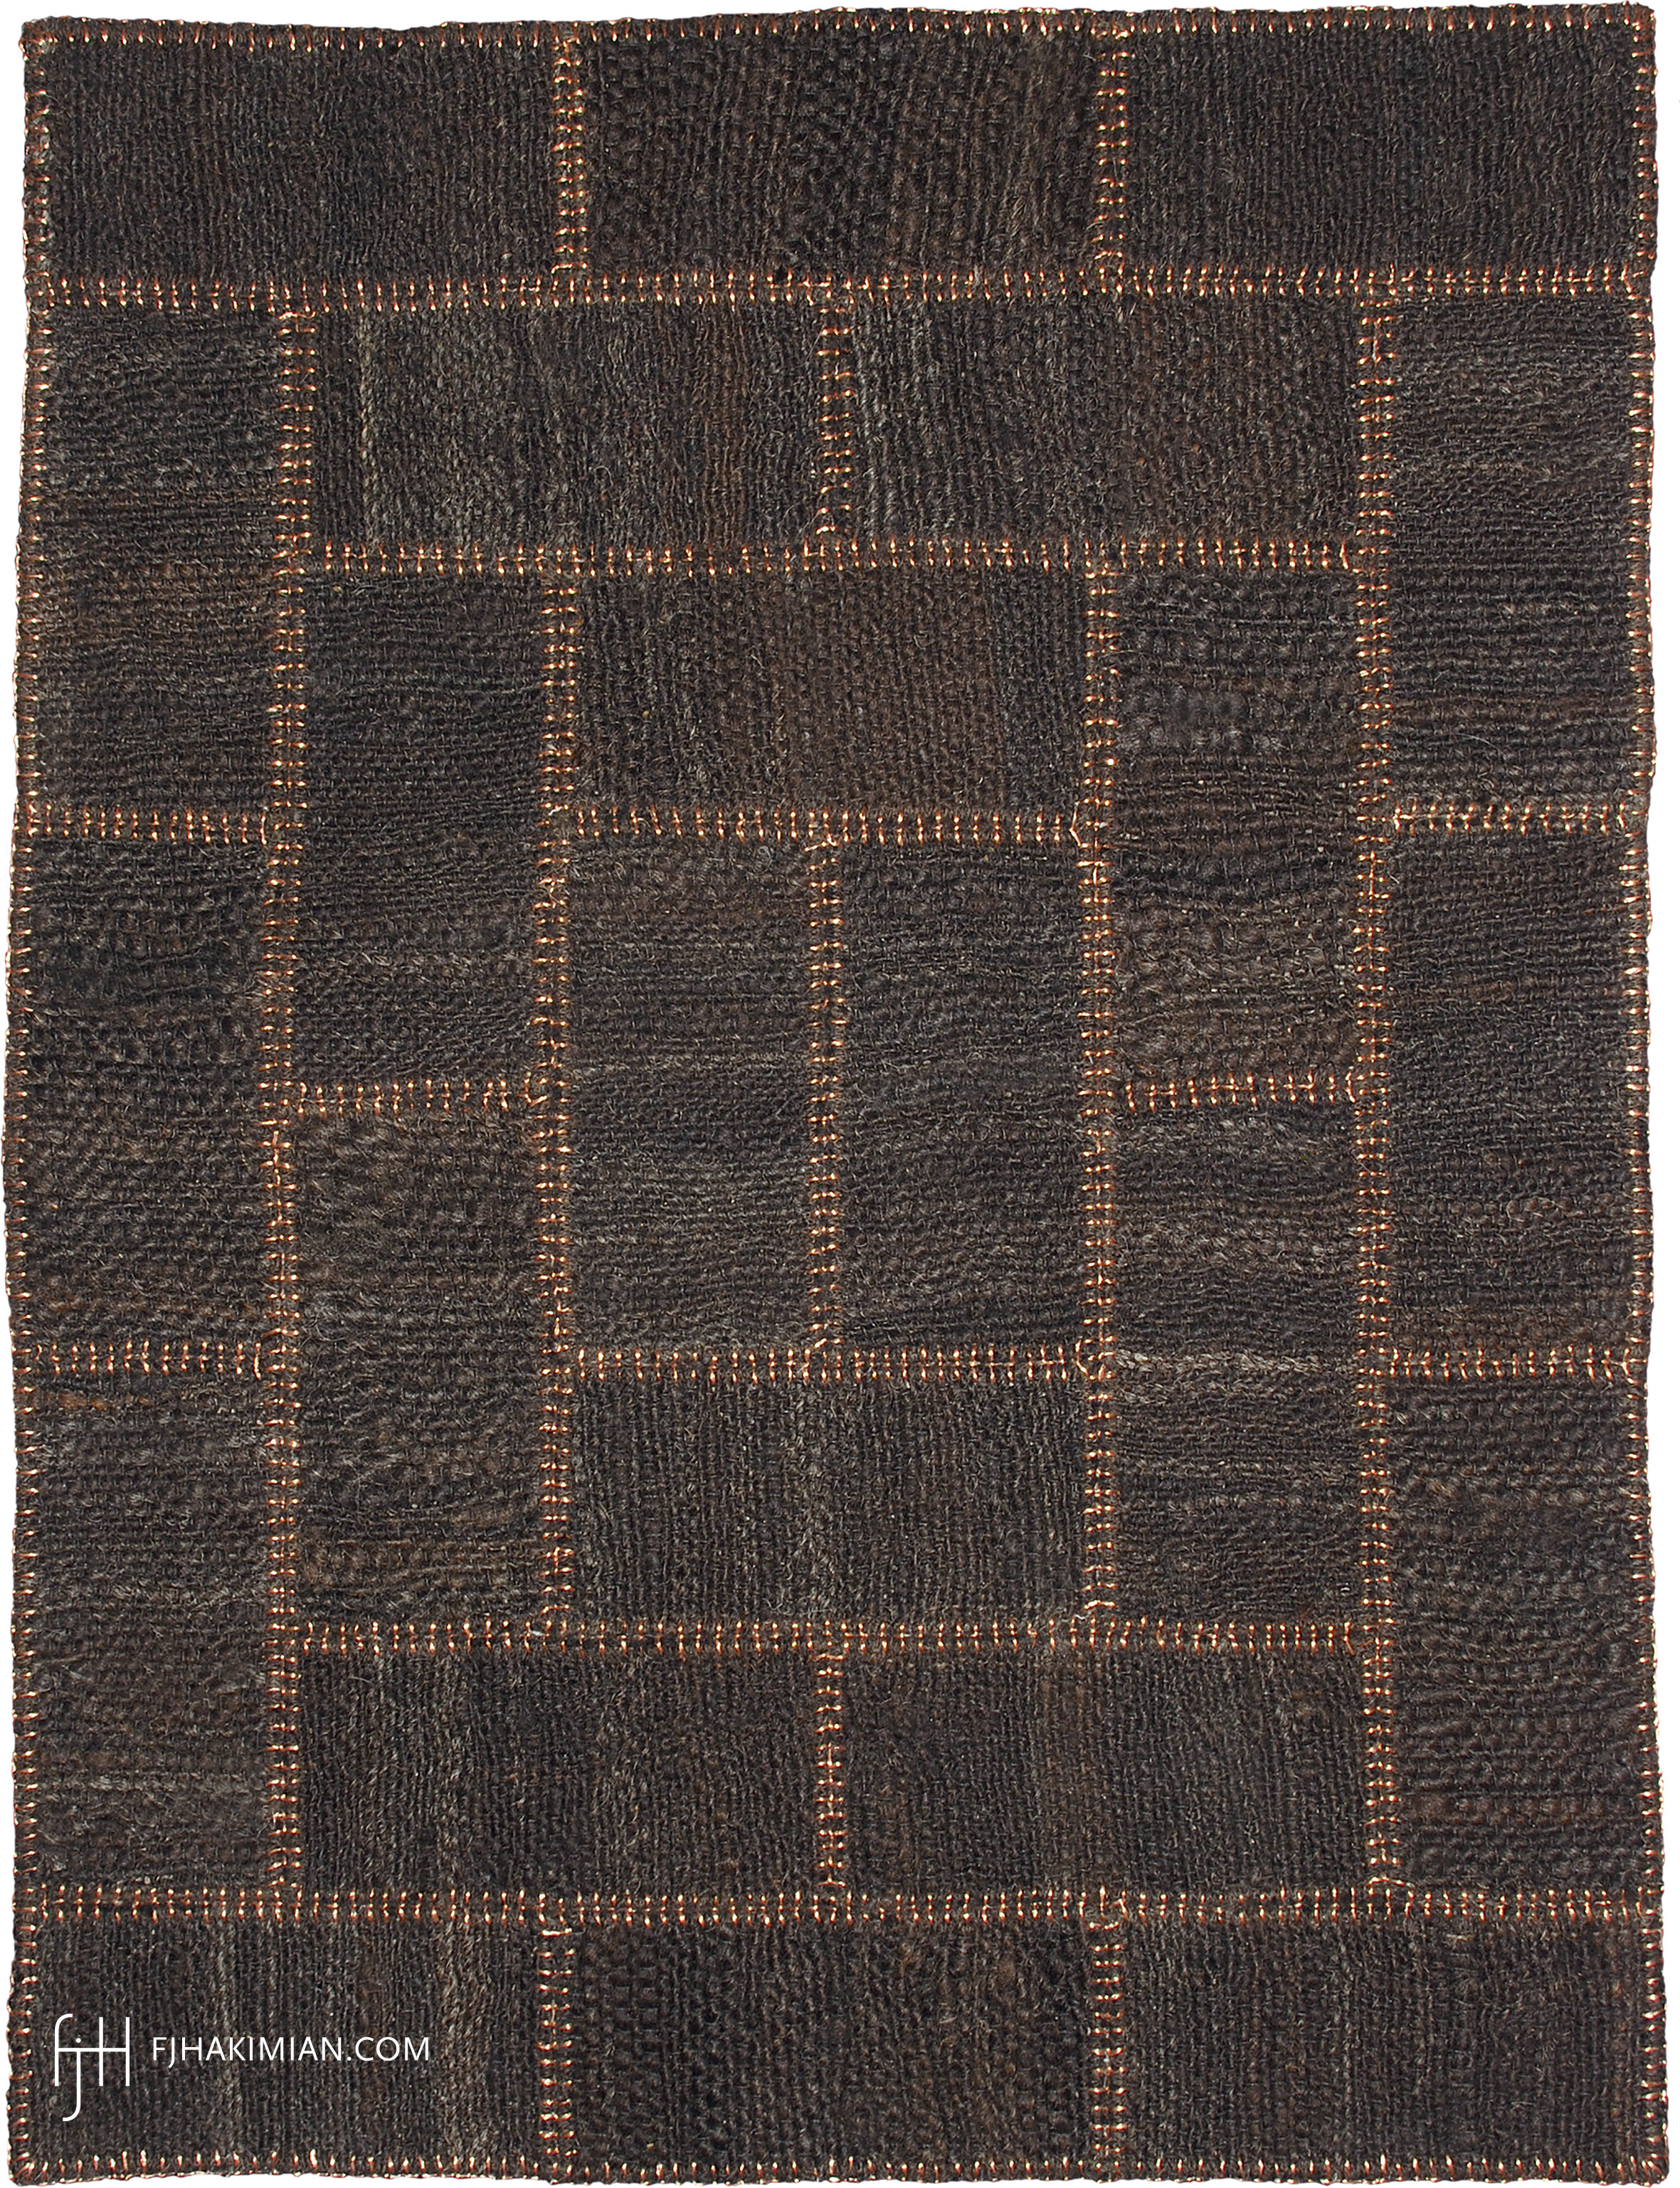 FJ Hakimian | 27661 | Custom Carpet